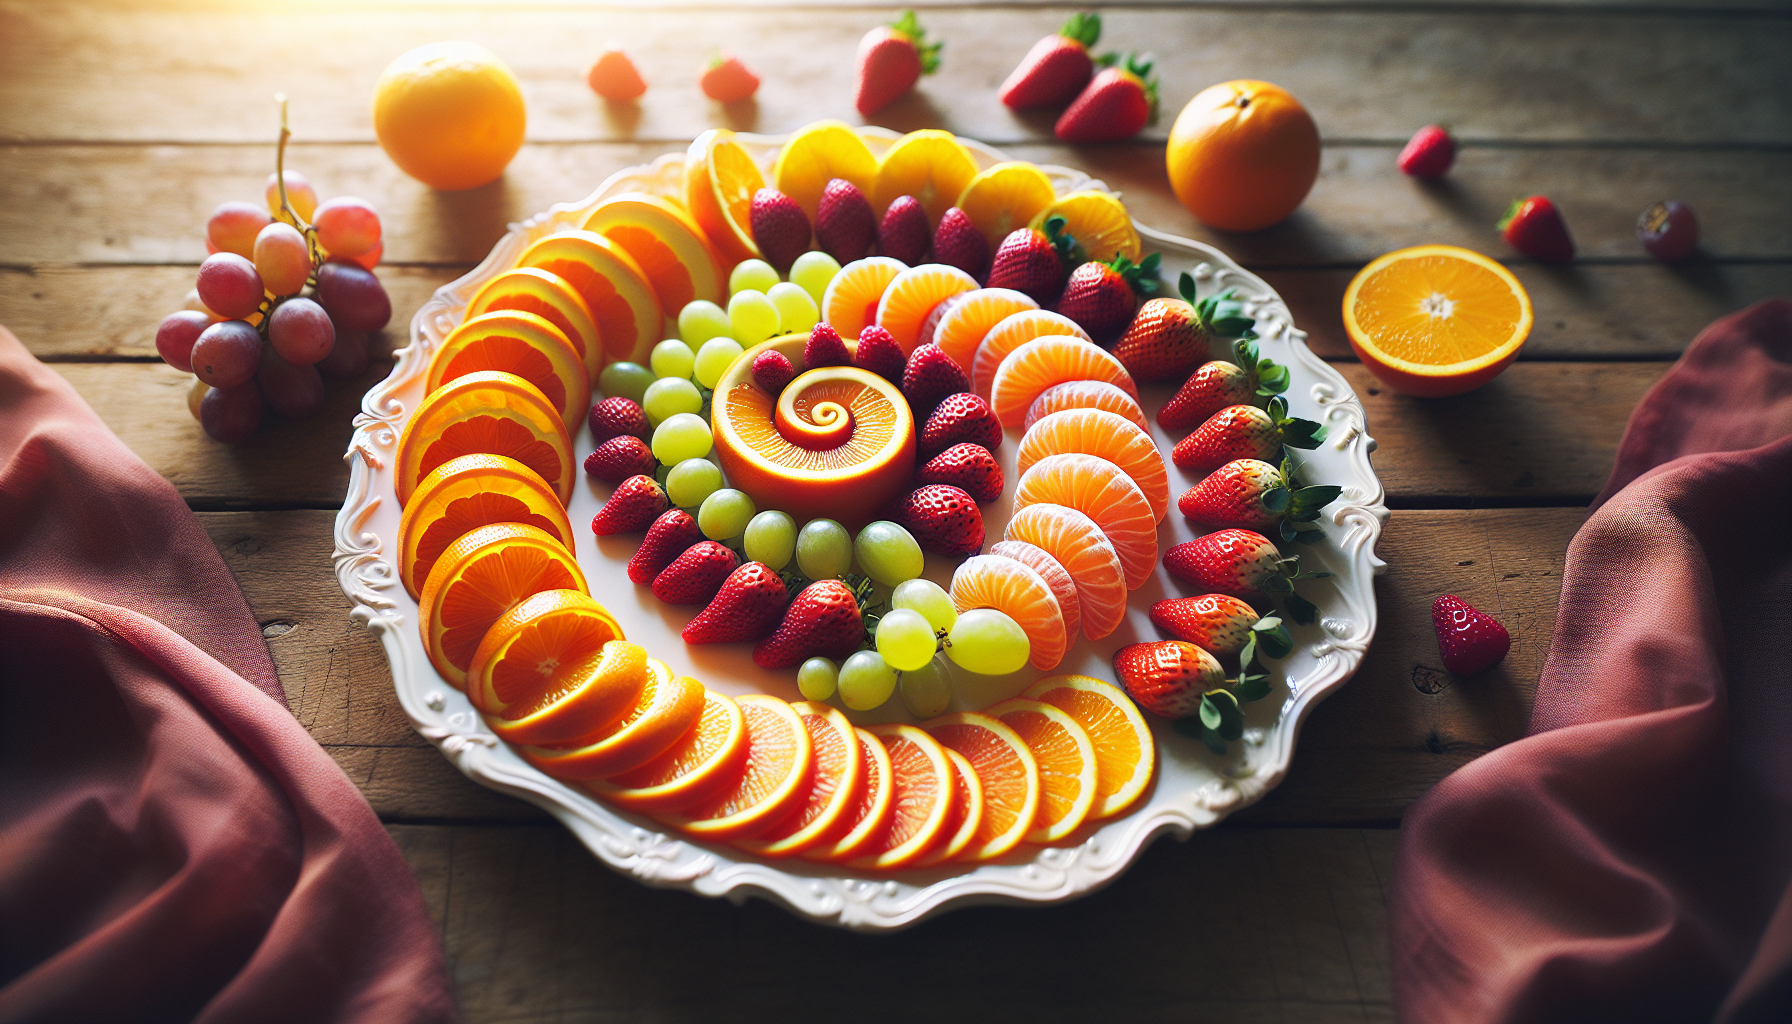 Colorful fruit salad arrangement